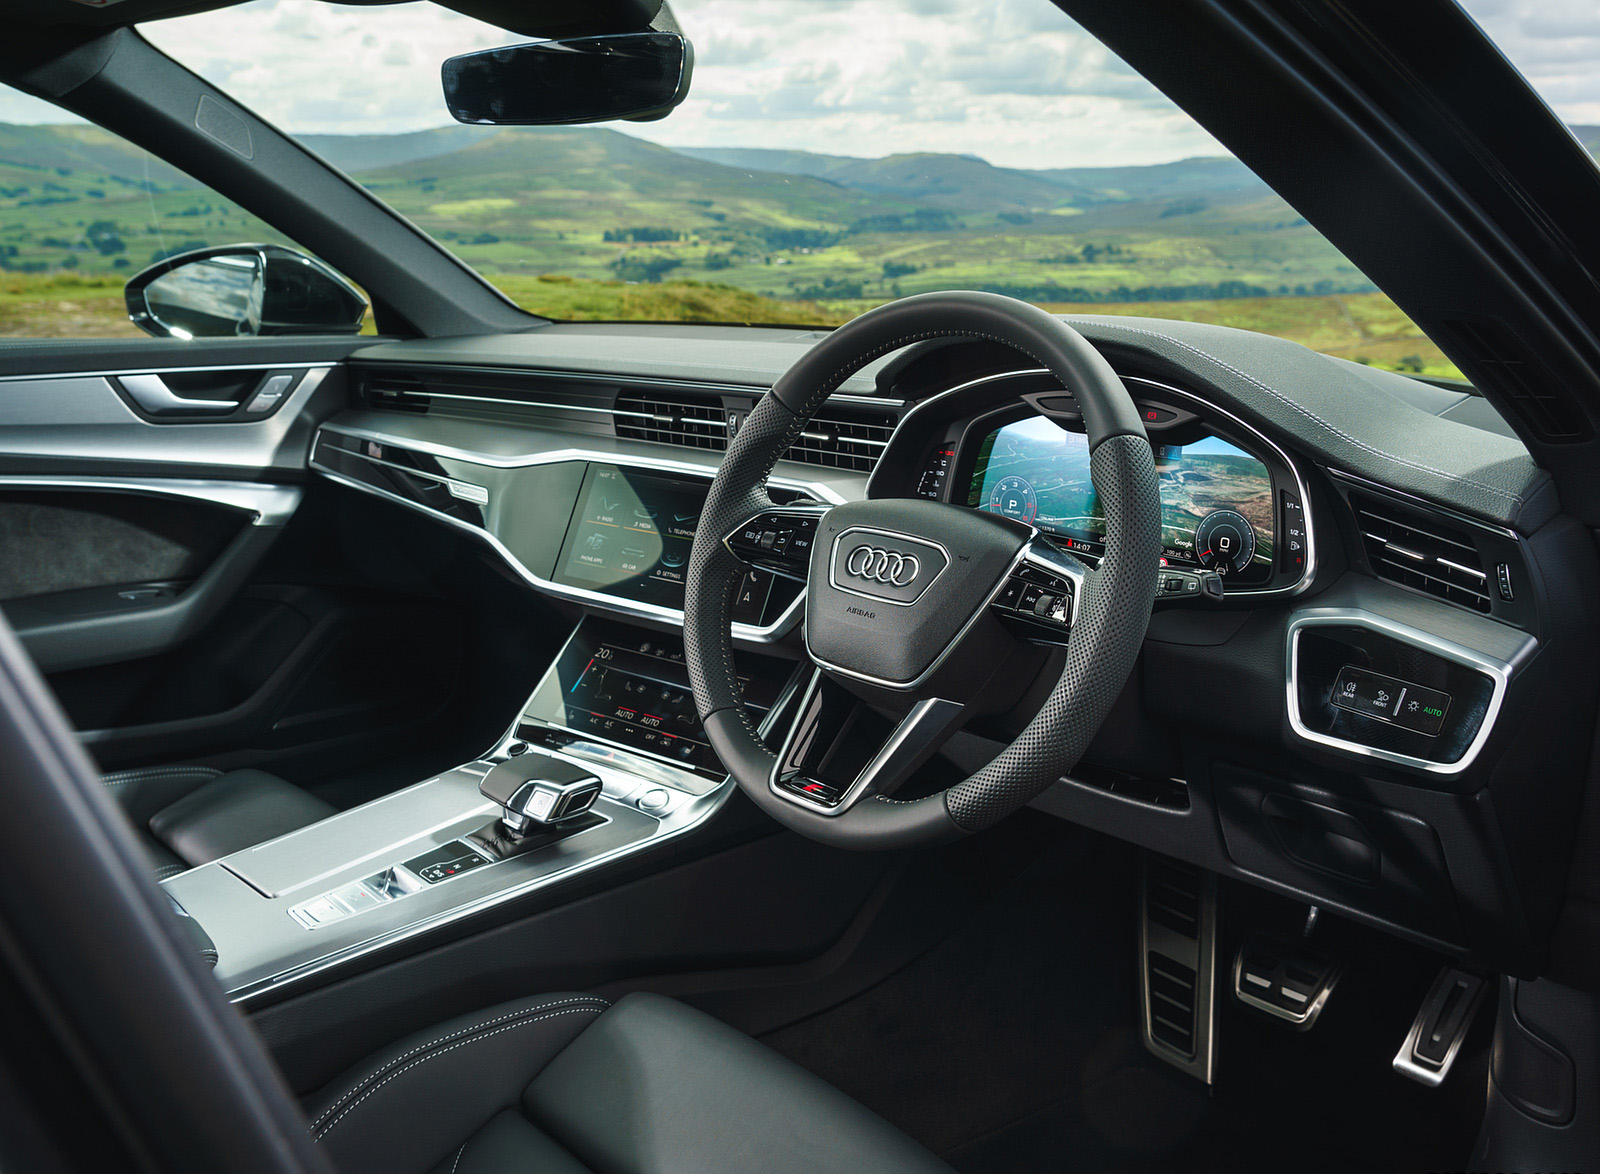 2019 Audi A6 Avant 50 TDI Quattro (UK-Spec) Interior Wallpapers #44 of 62